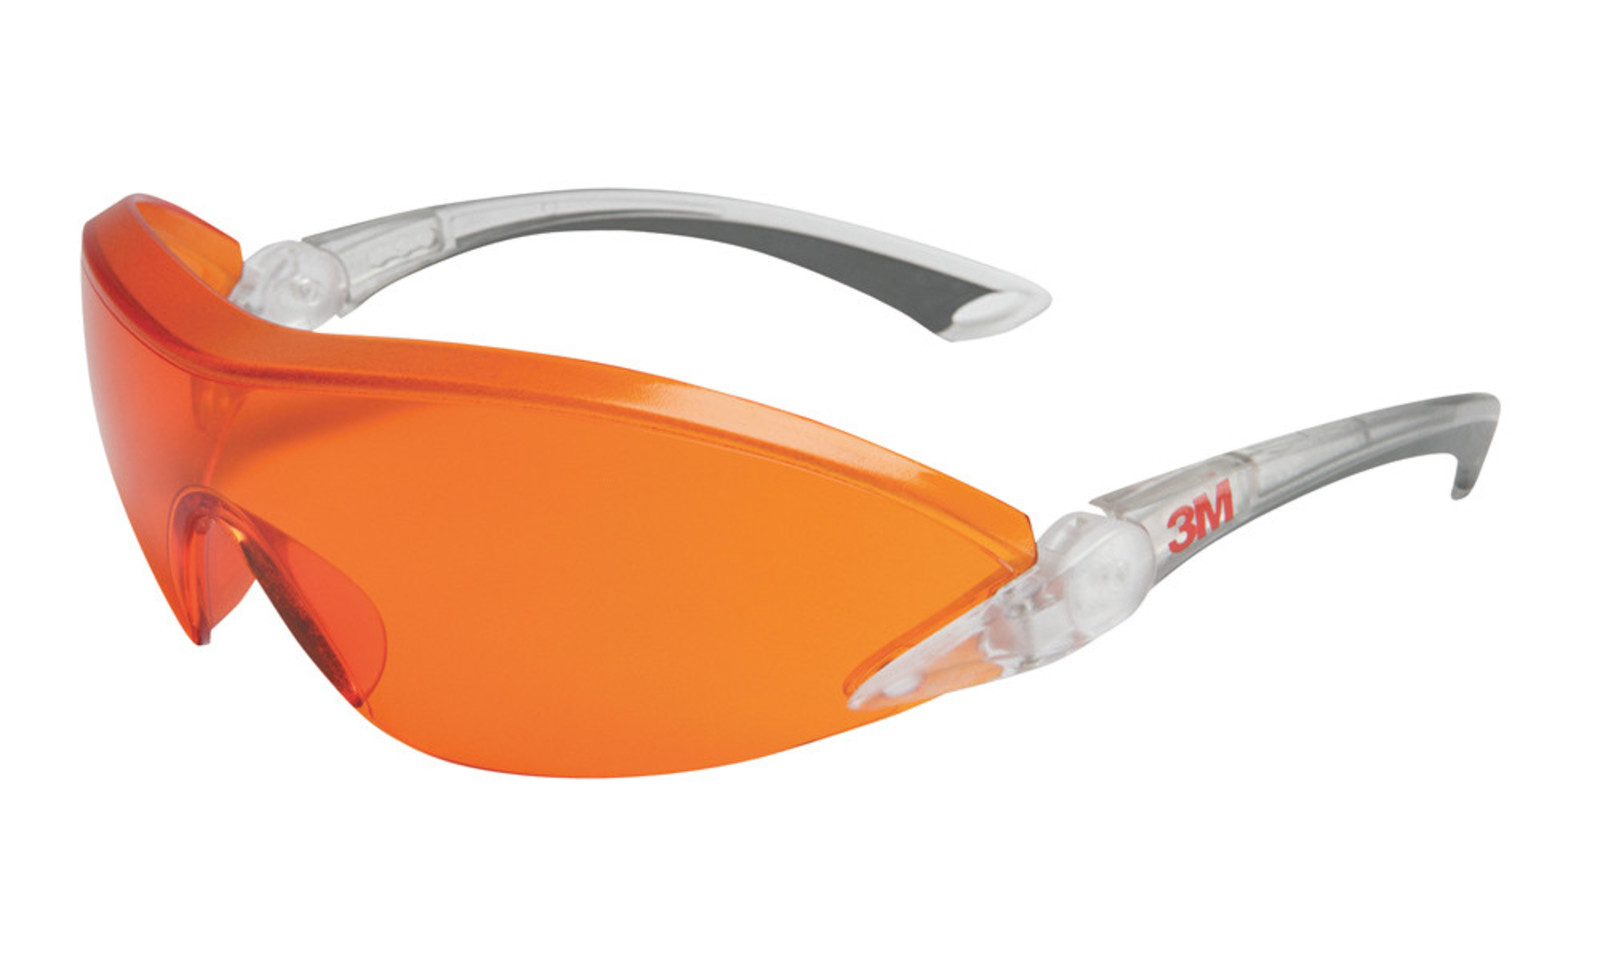 Ochranné okuliare 3M 284x - farba: červená/oranžová